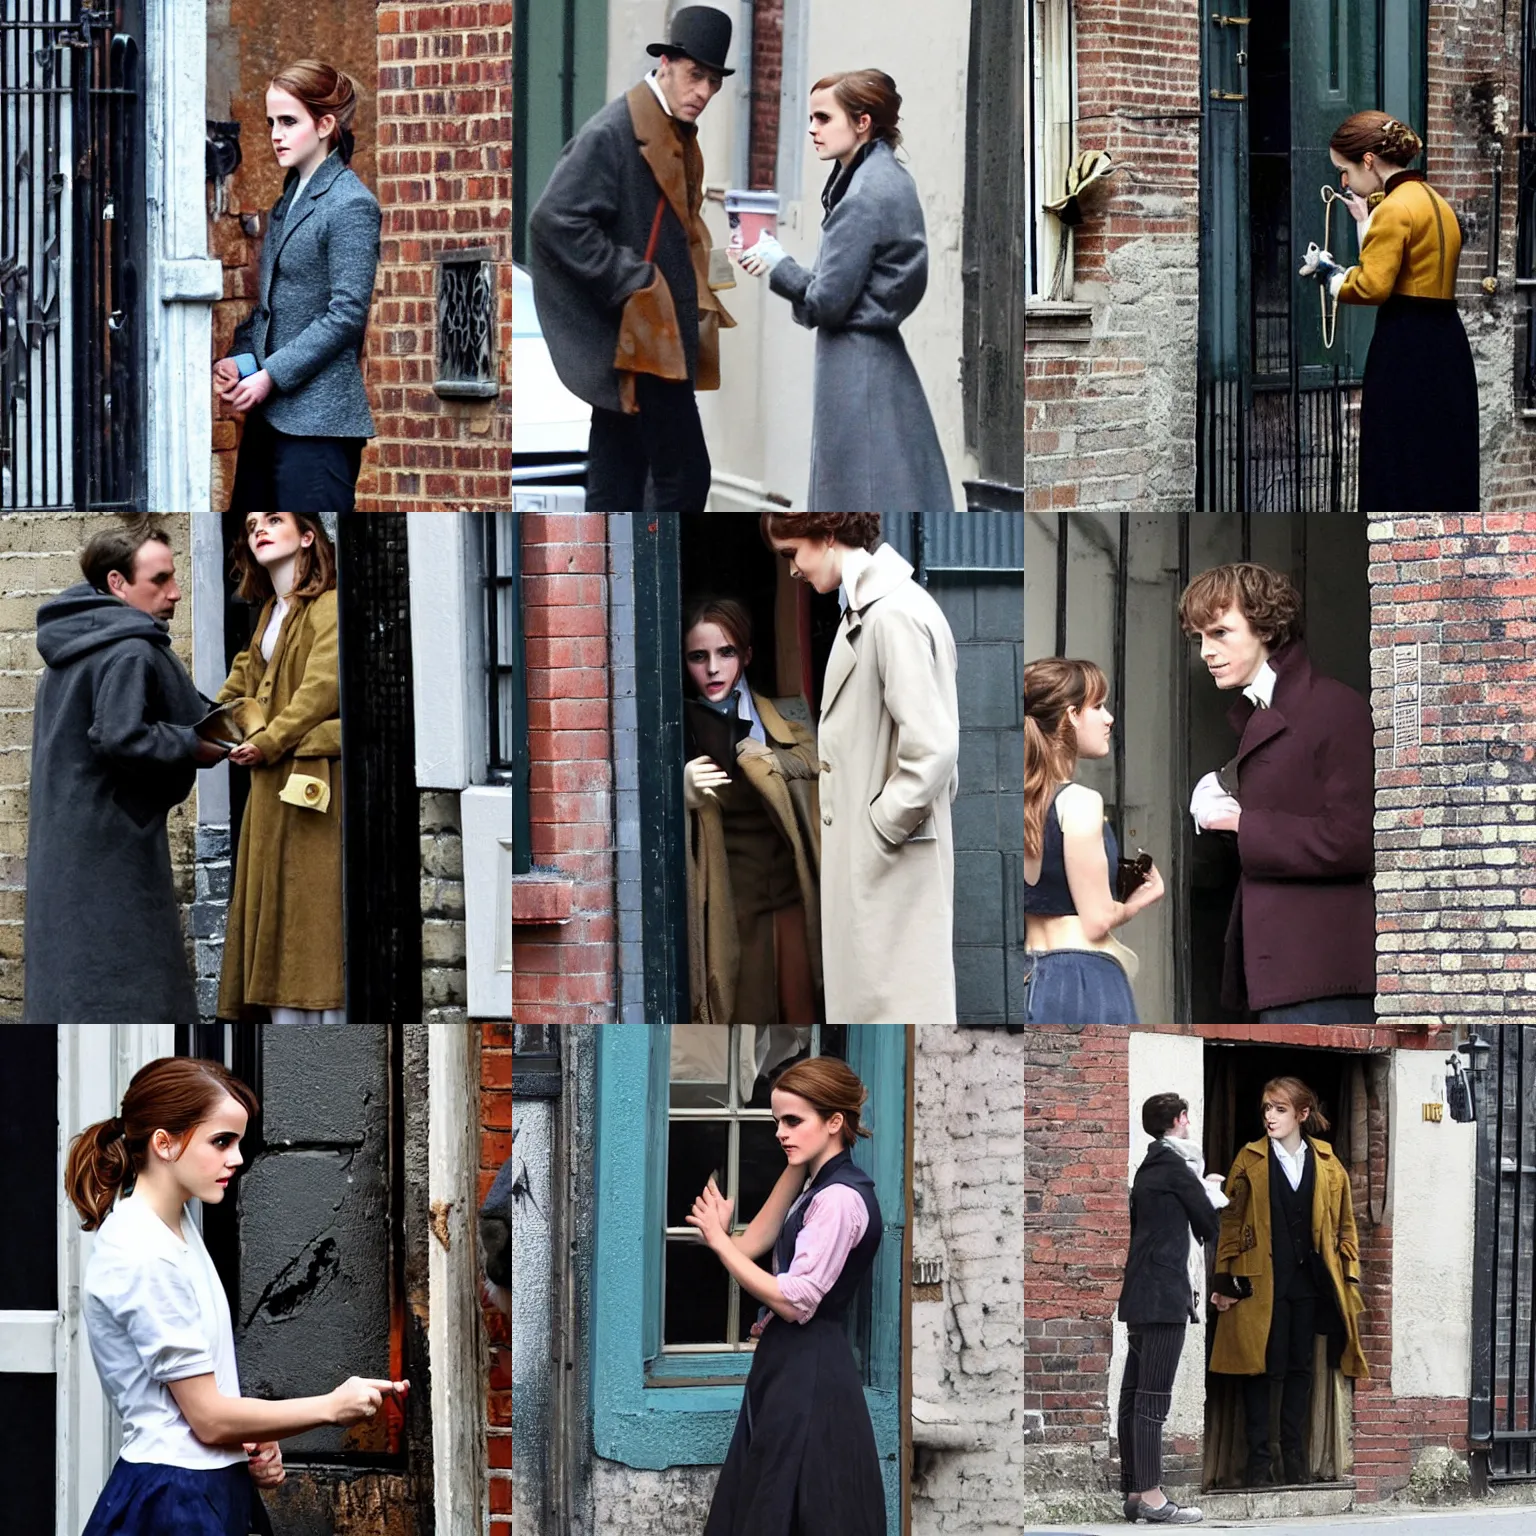 Prompt: Emma Watson dressed as Sherlock Holmes inspecting a broken window in an alley